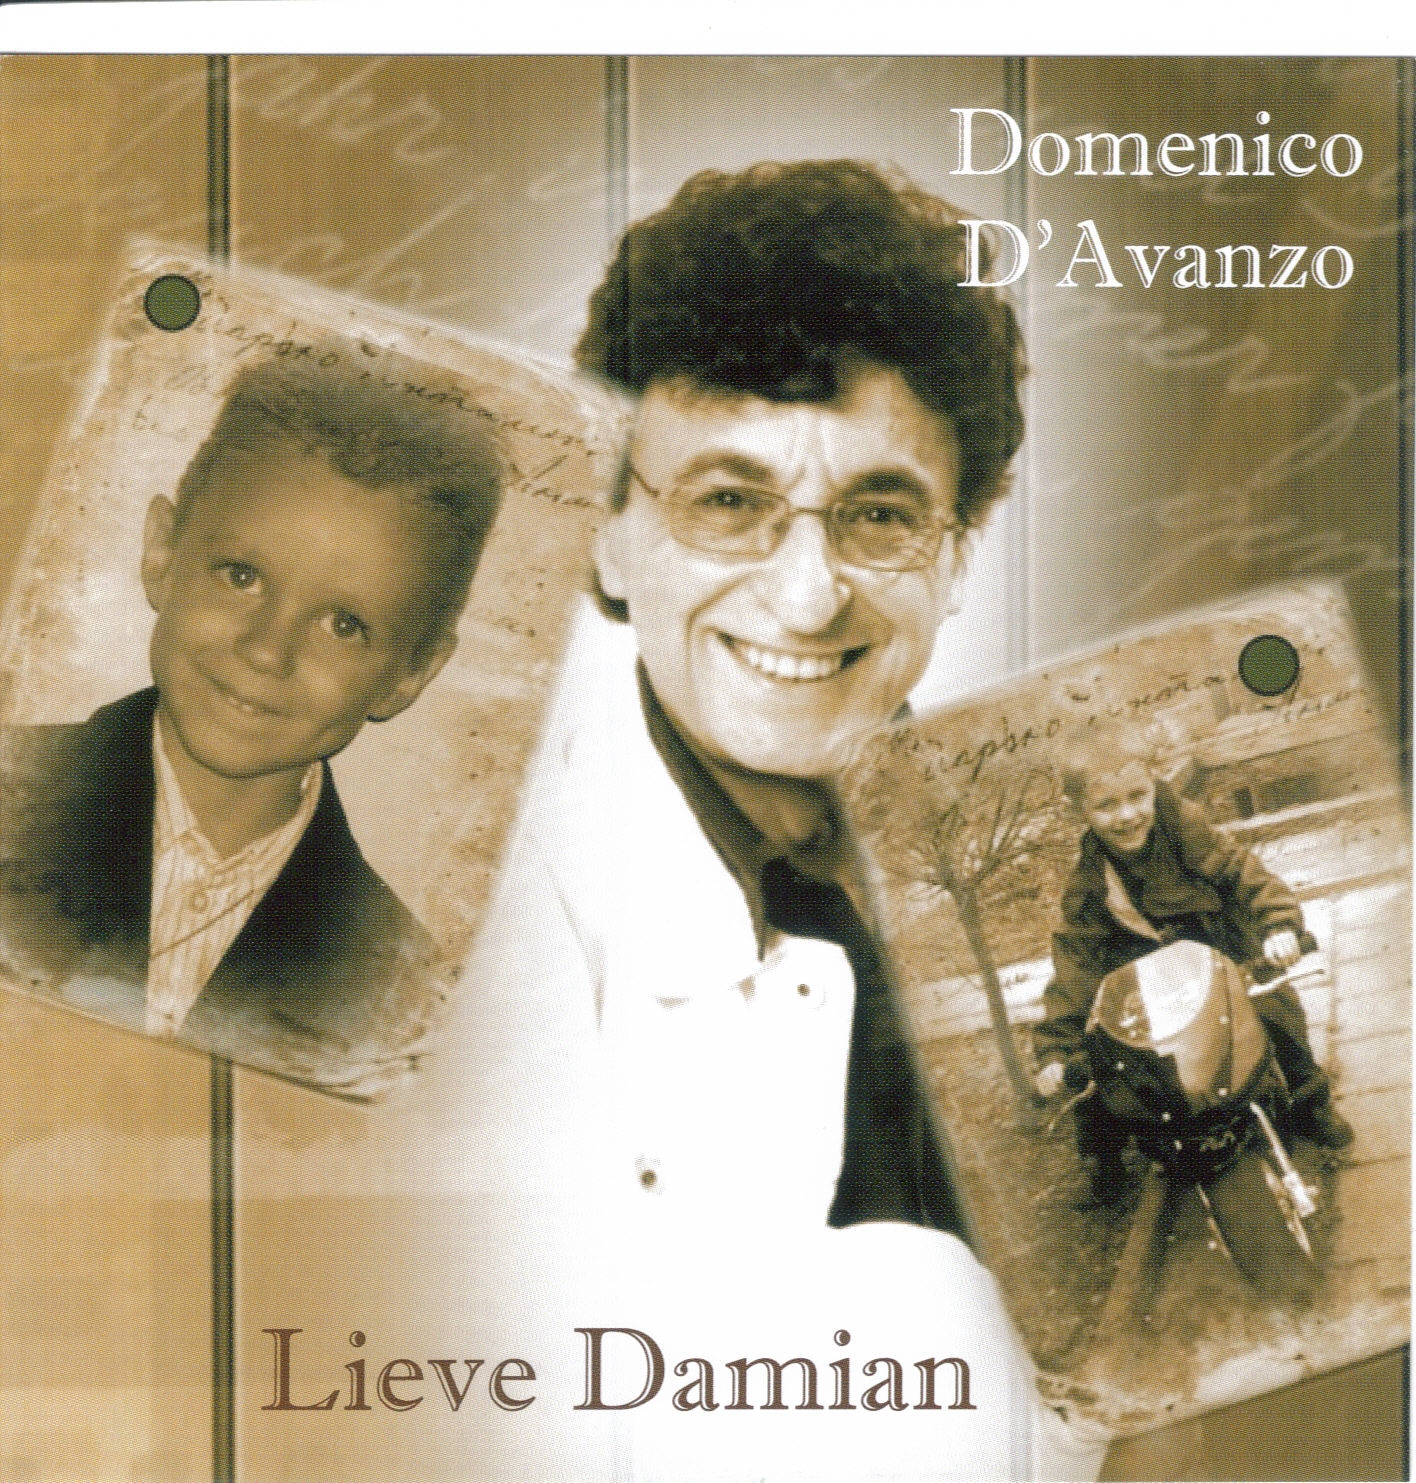 Domenico d avanzo - Het beste van